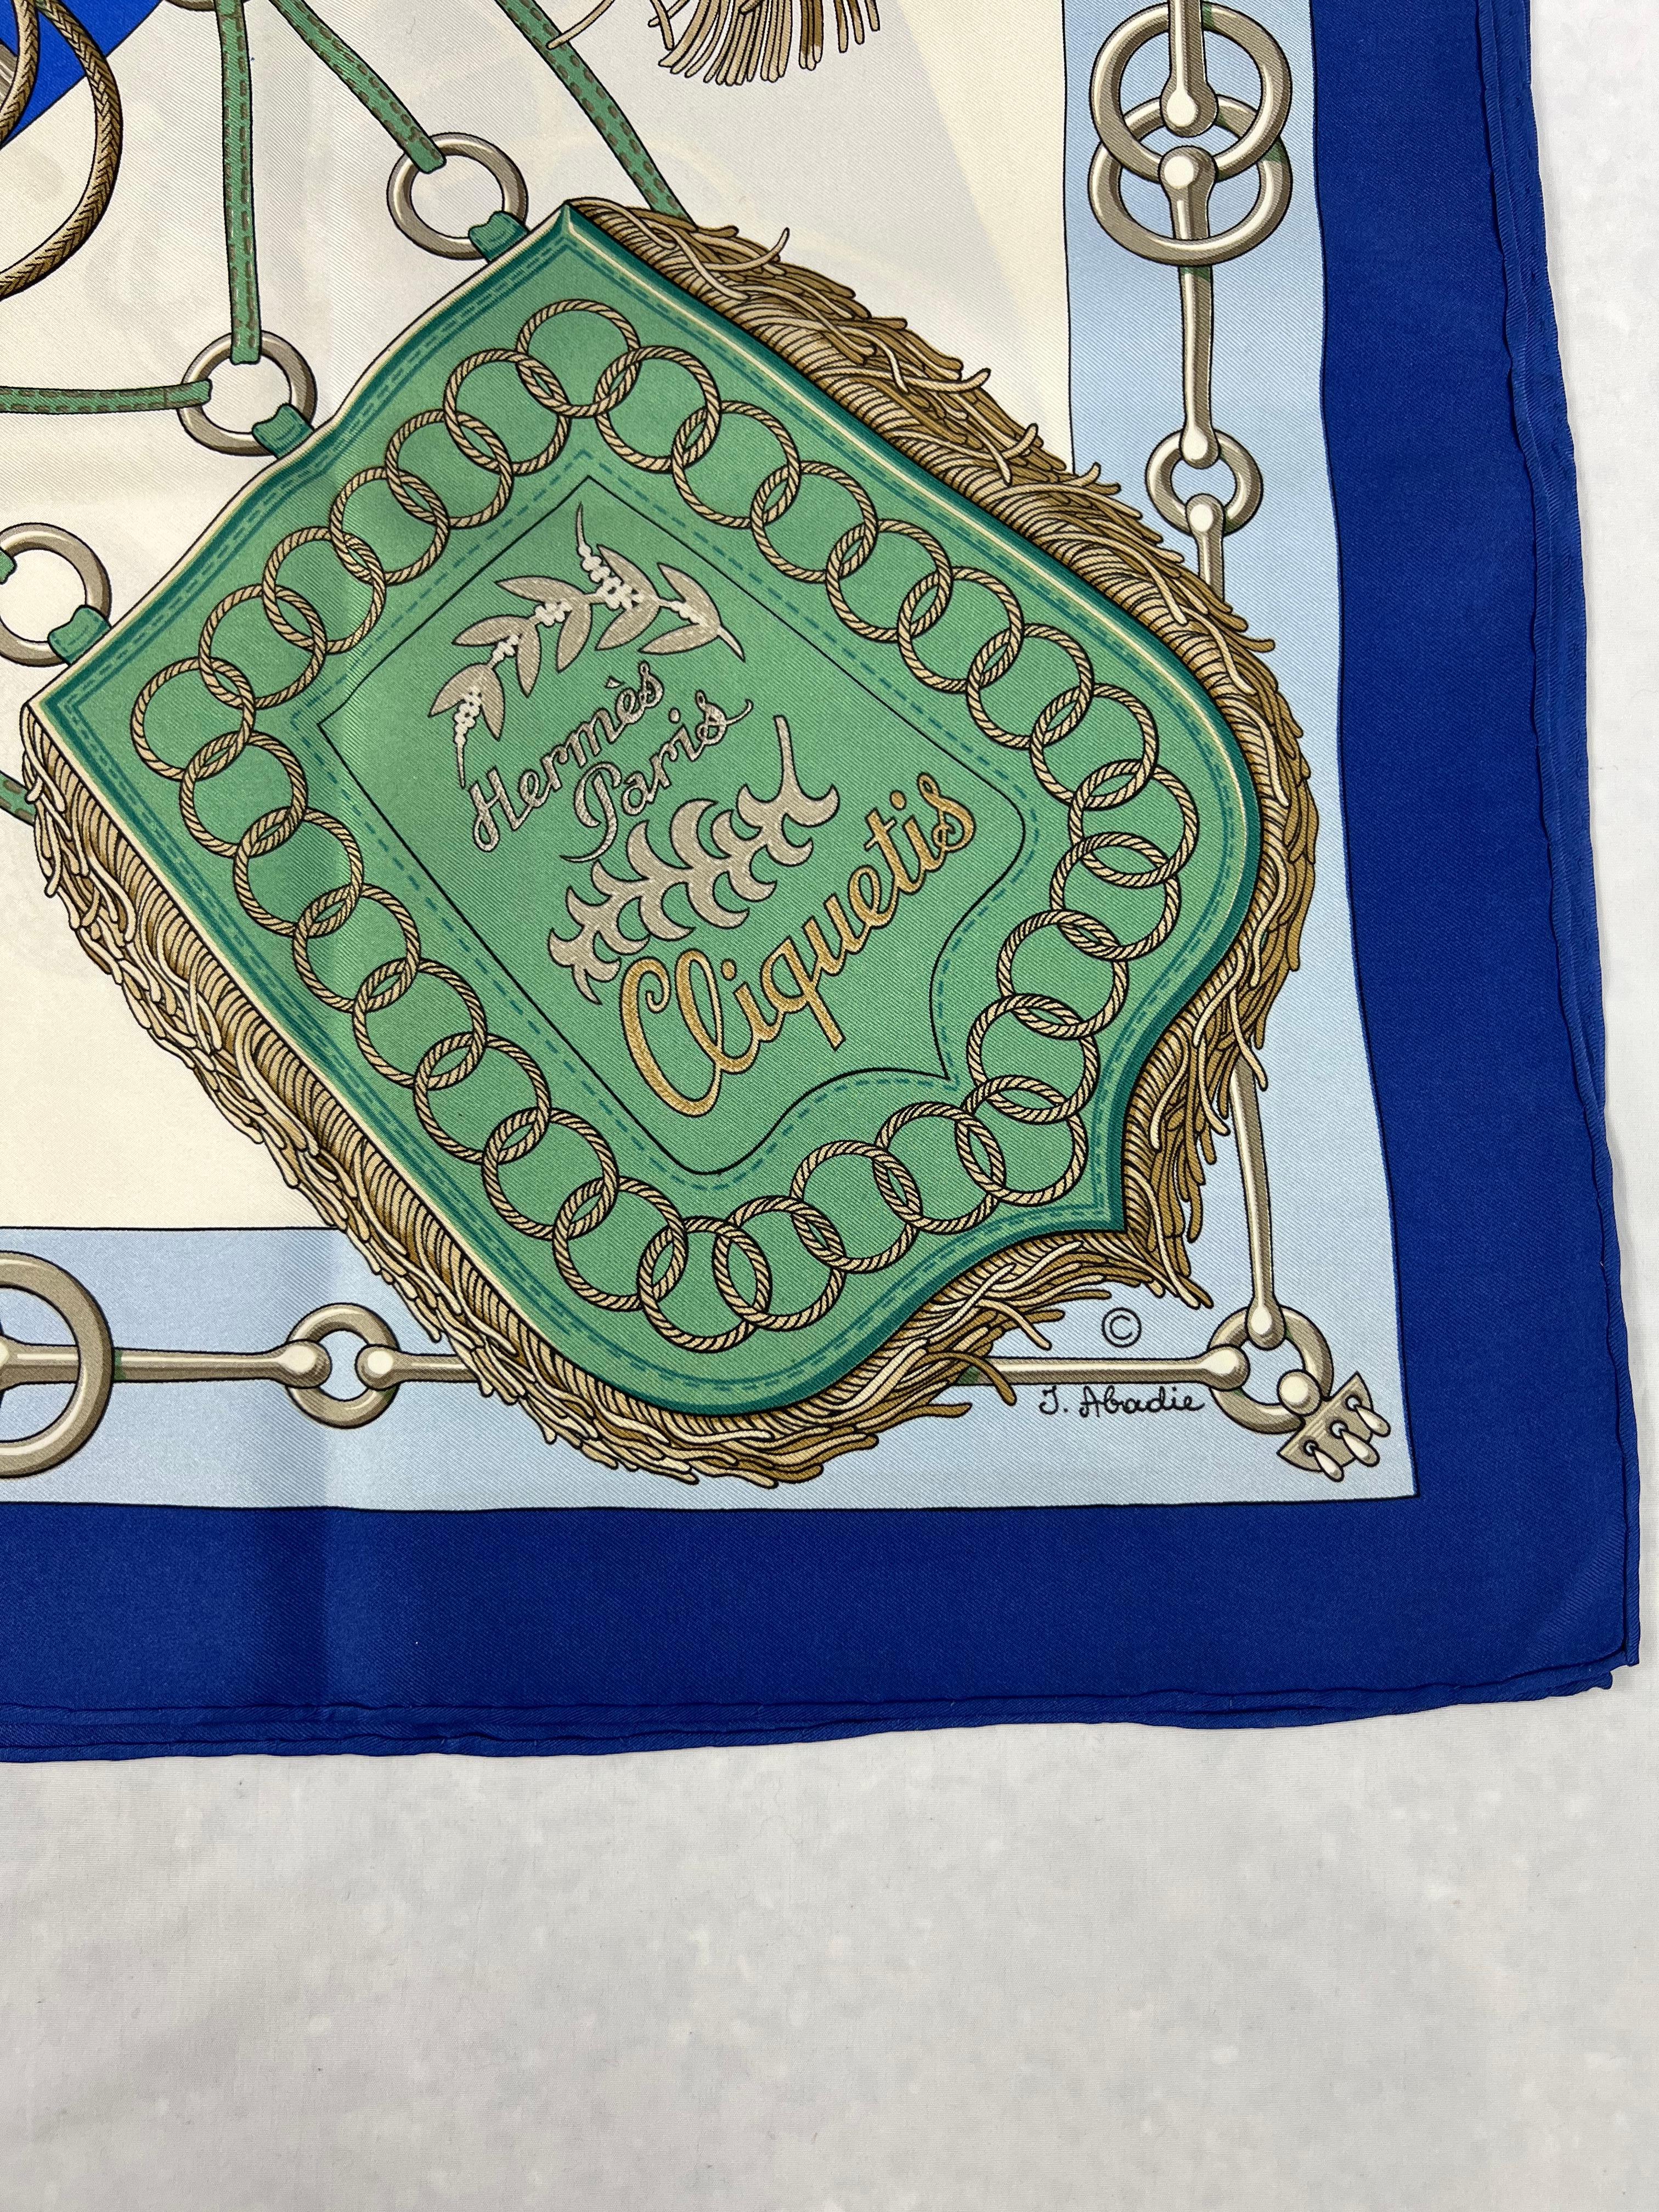 Détails du produit :

Le foulard est dessiné par Julia Abadie pour Hermès en 1972, il est réalisé en 100% soie. Il présente une palette de couleurs bleue, verte et brune avec des motifs remarquables.